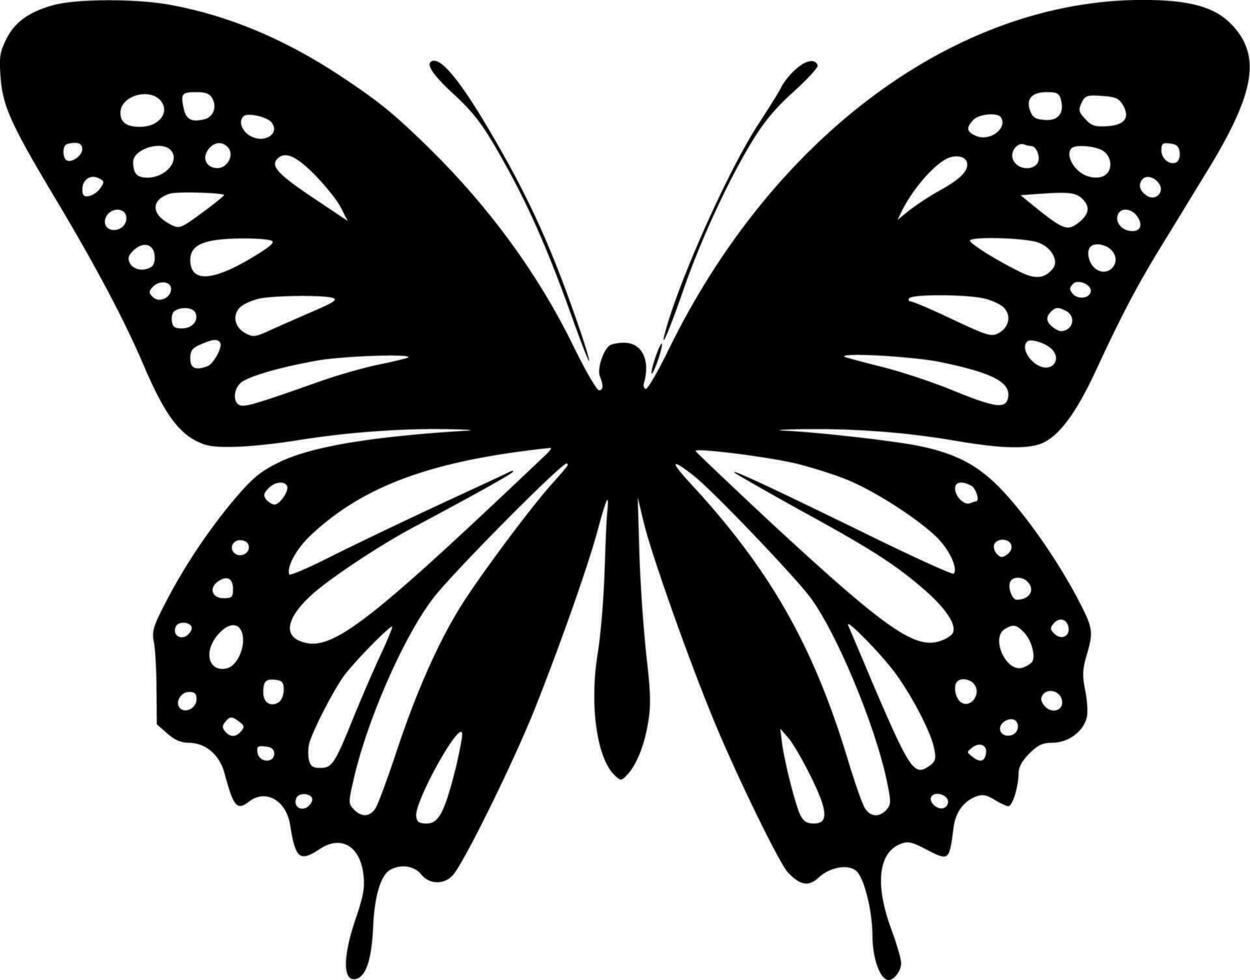 borboleta - Alto qualidade vetor logotipo - vetor ilustração ideal para camiseta gráfico